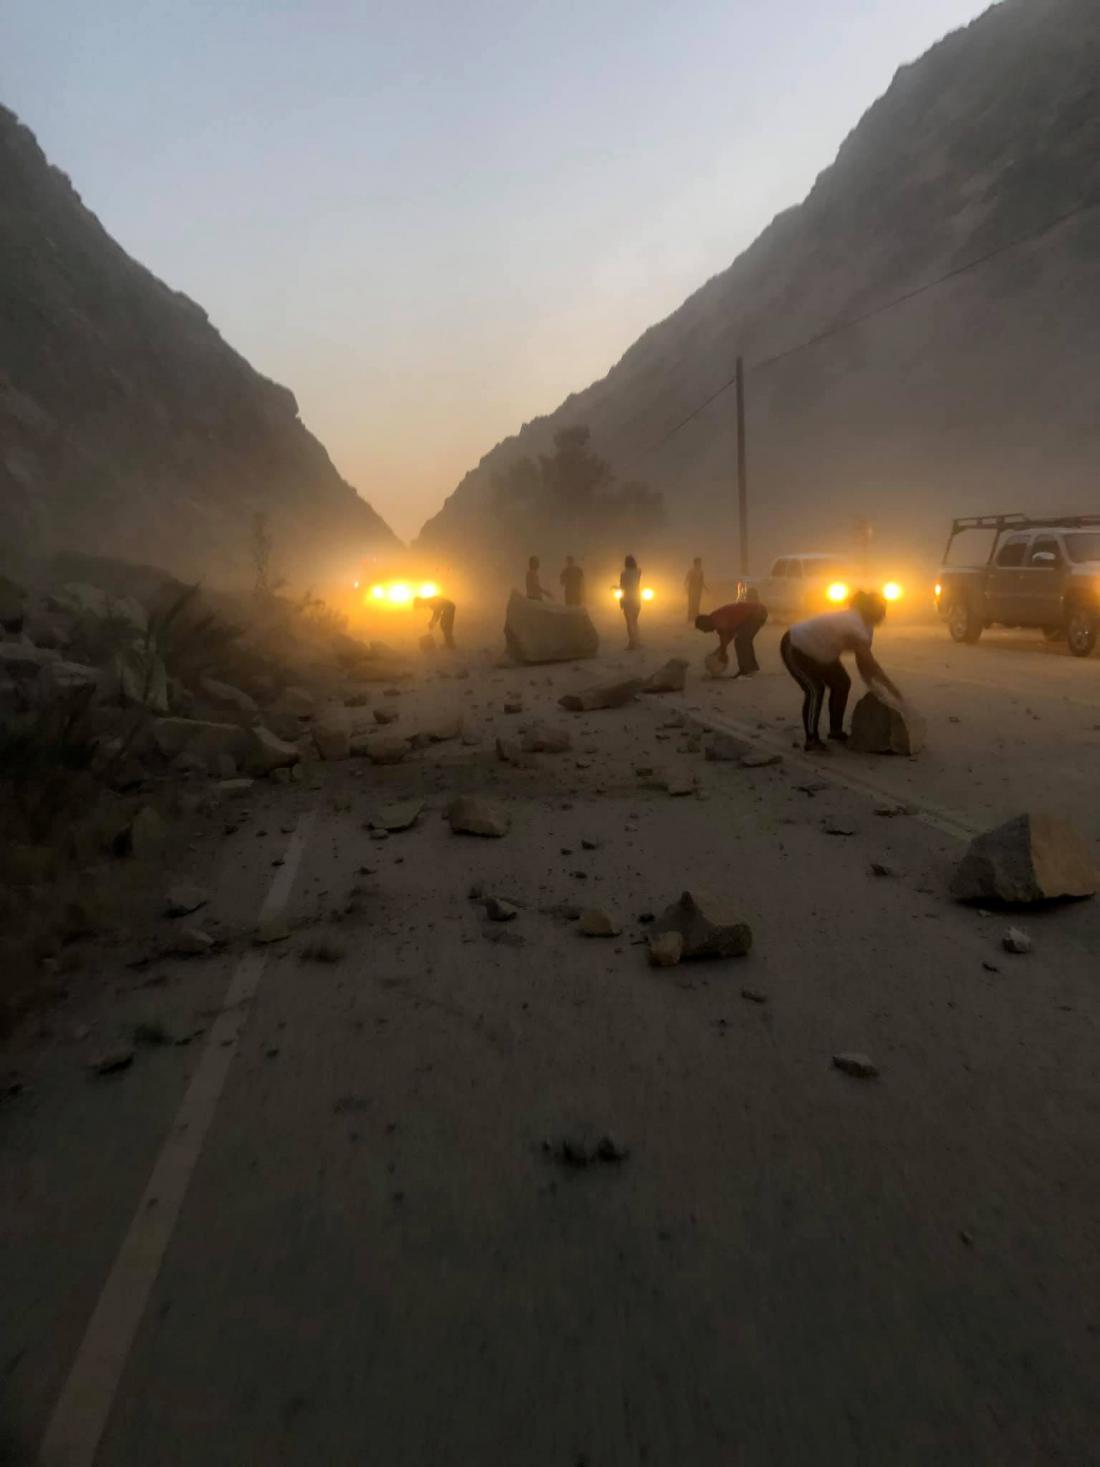 Potres je povzročil plaz skal, ki so pristale na cesti. (Foto: Reuters)